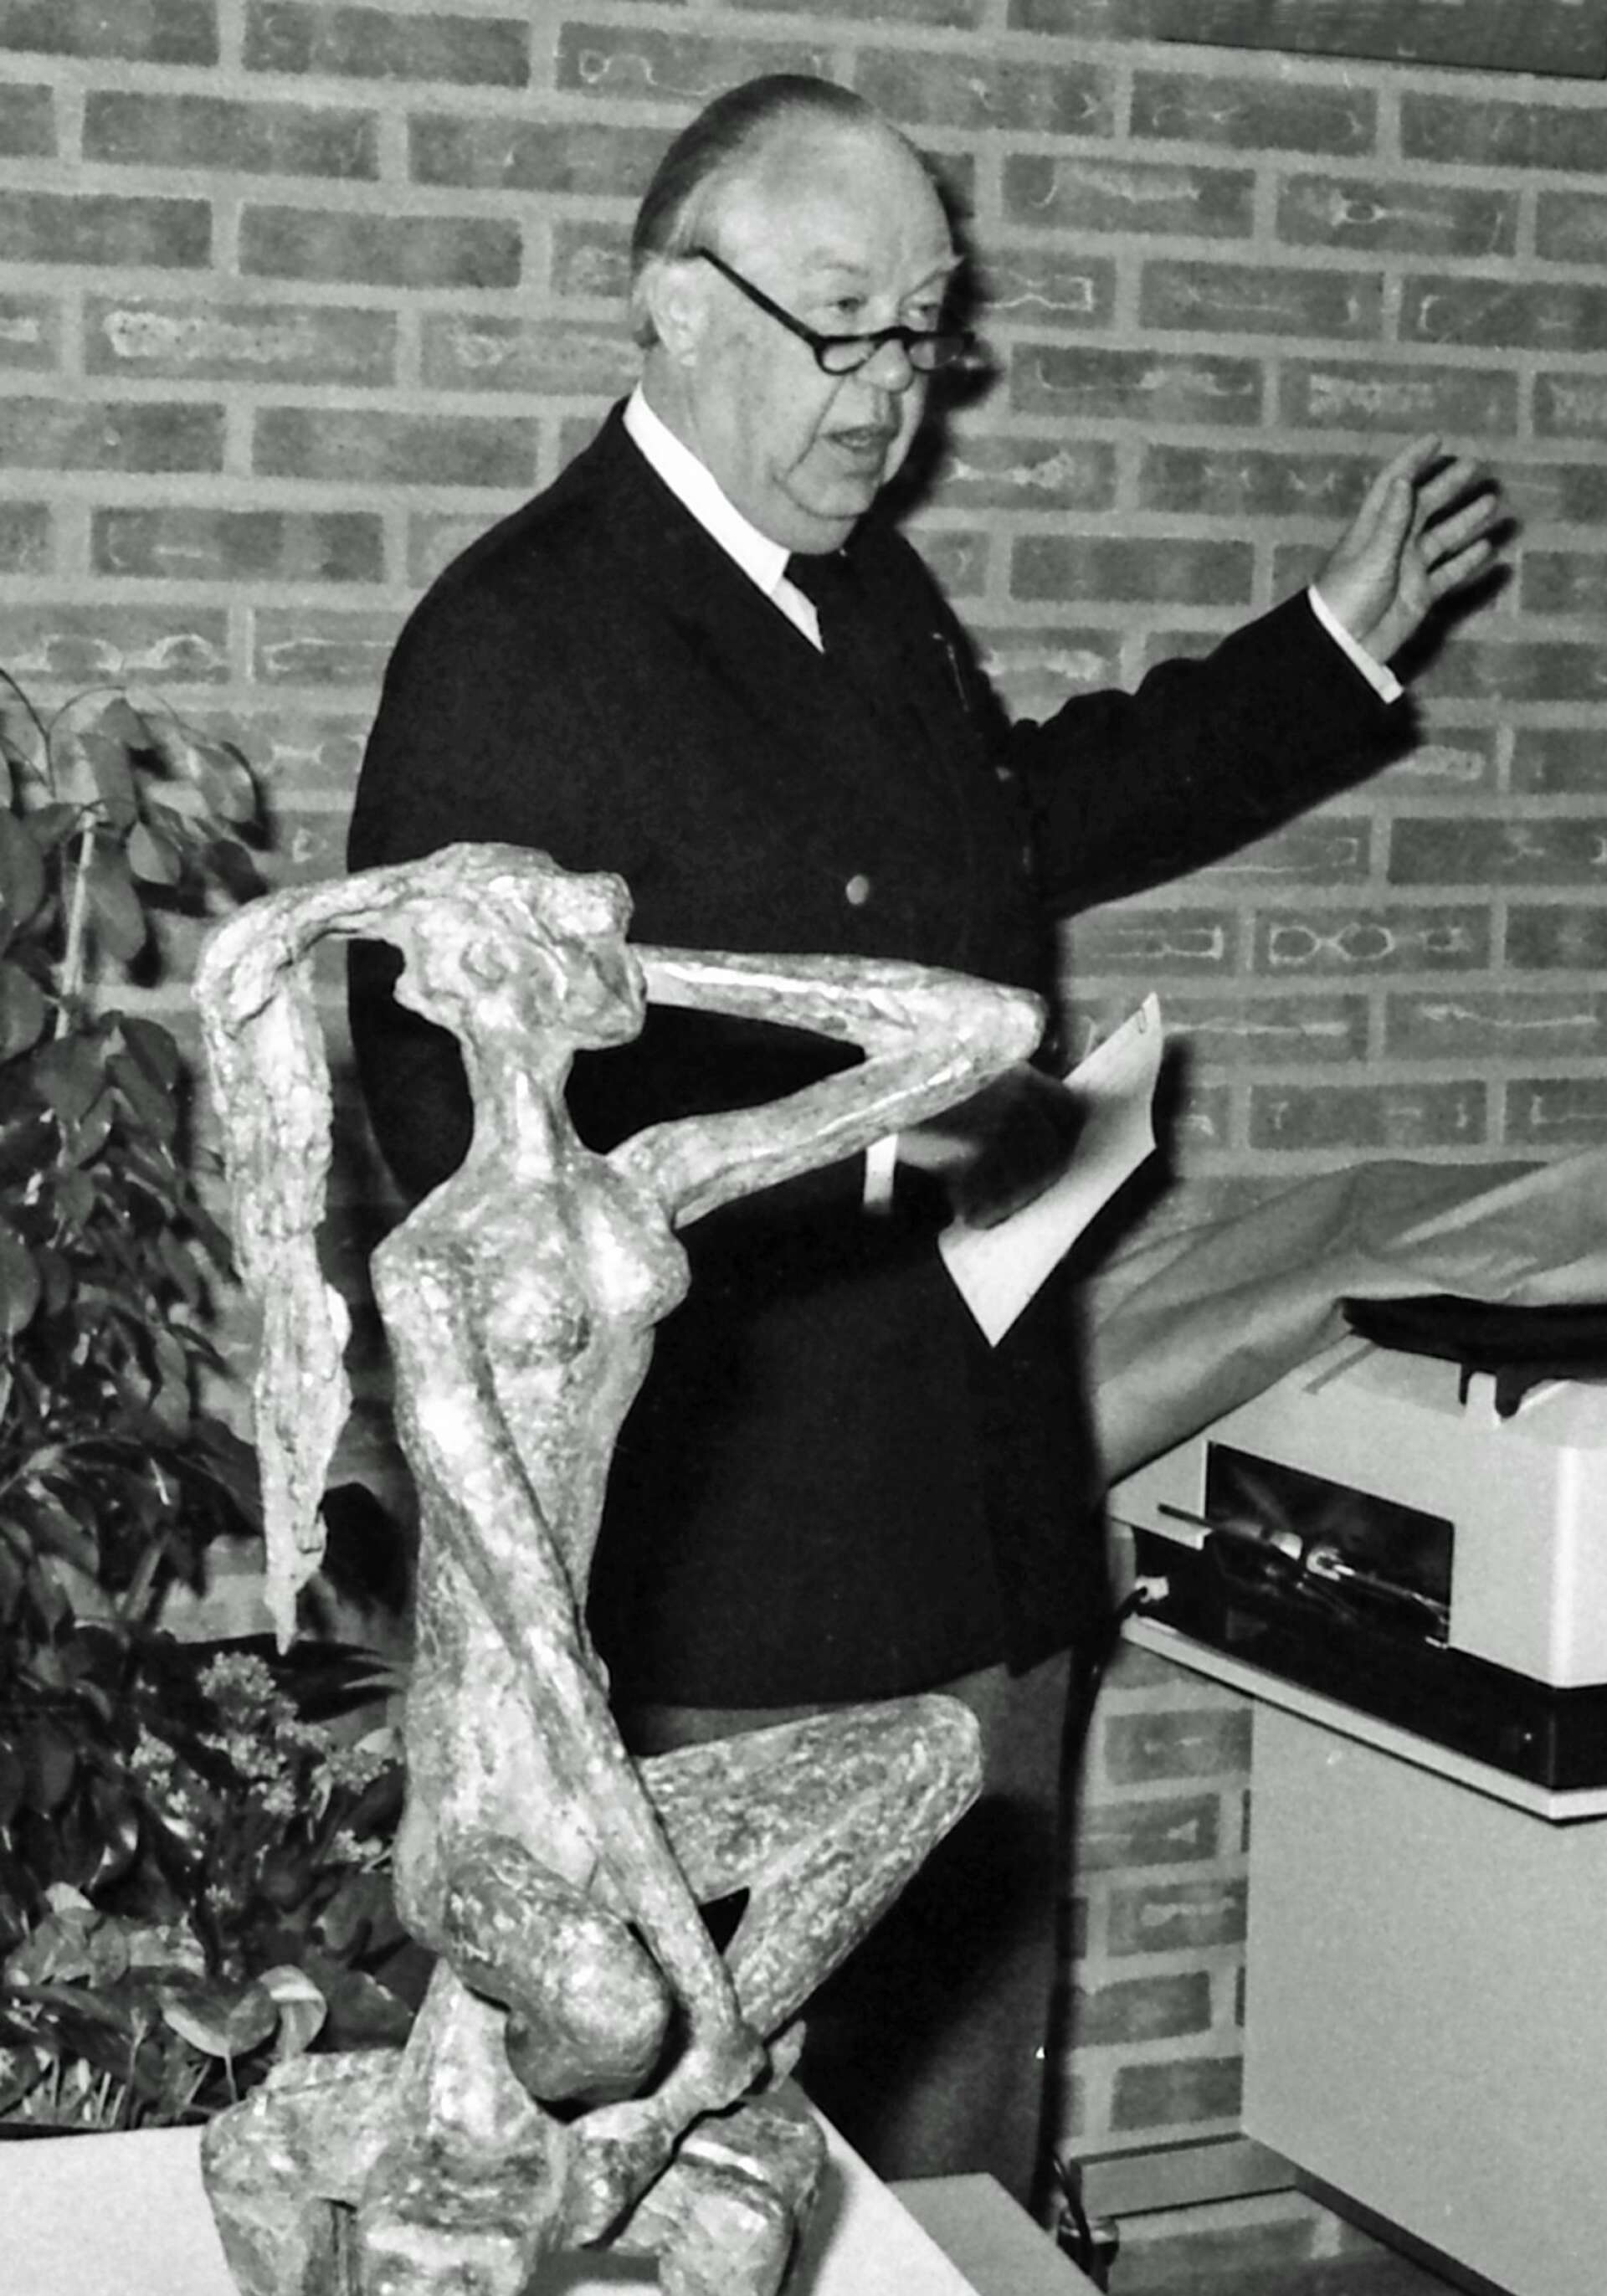 Skulpturen Tintomara inköptes också 1979 för att bli en del av hotellets konstnärliga utsmyckning. Konstinköpskommitténs ordförande Bernt Löfgren avtäckte Tintomara när hotellet invigdes. Numera finns Tintomara i ena hörnet av Stortorget. 